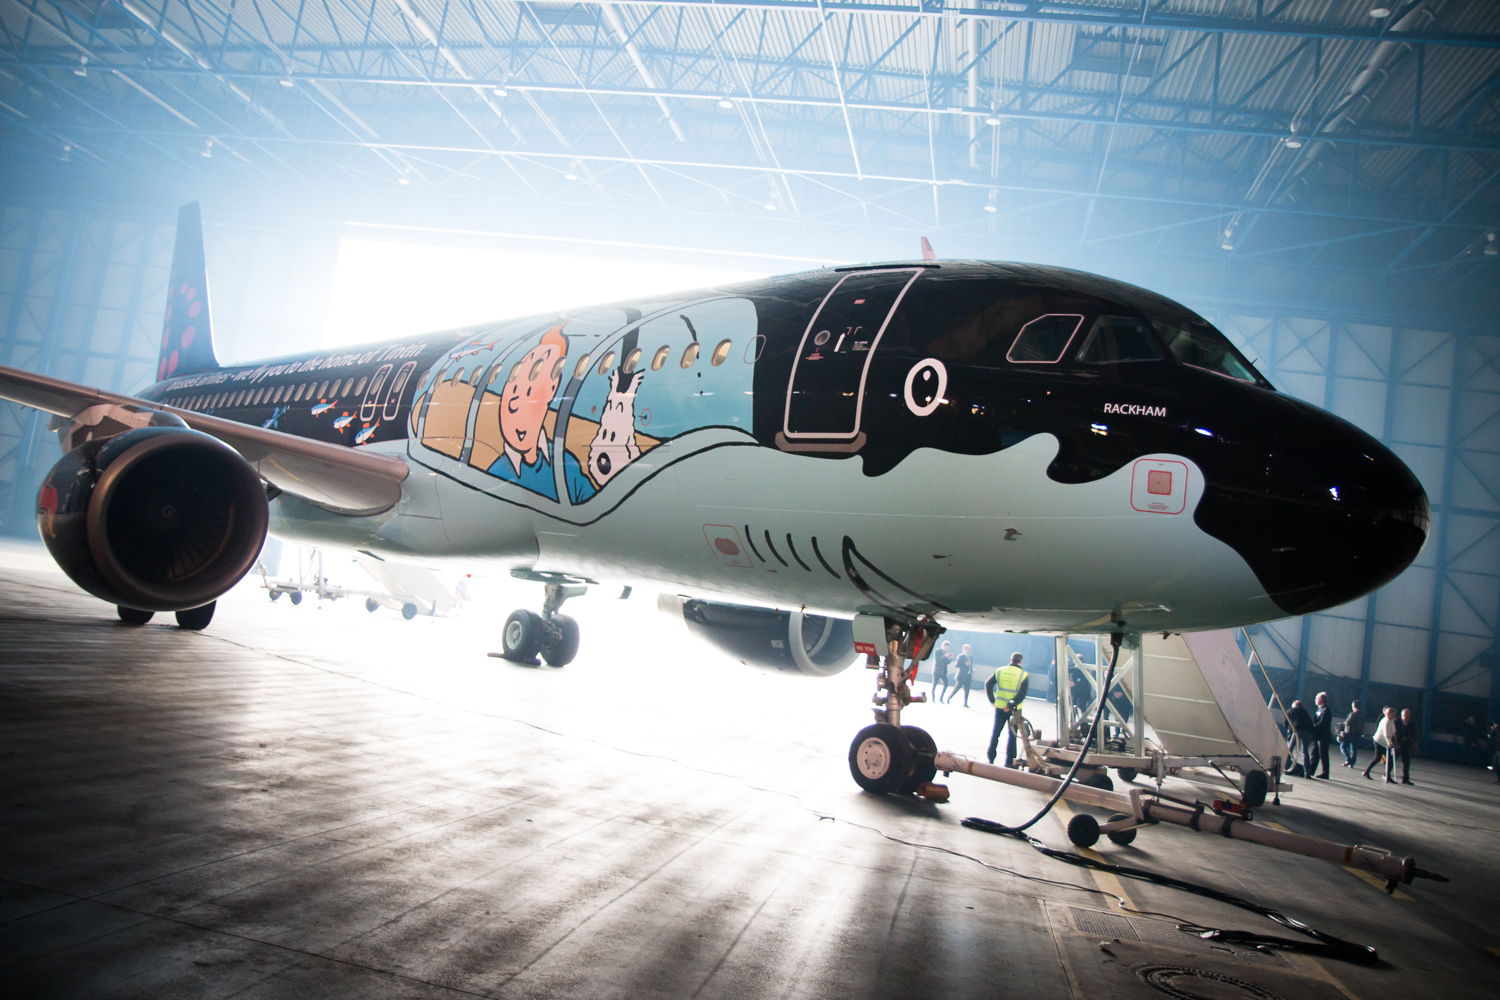 Rackham - Tintin aircraft 